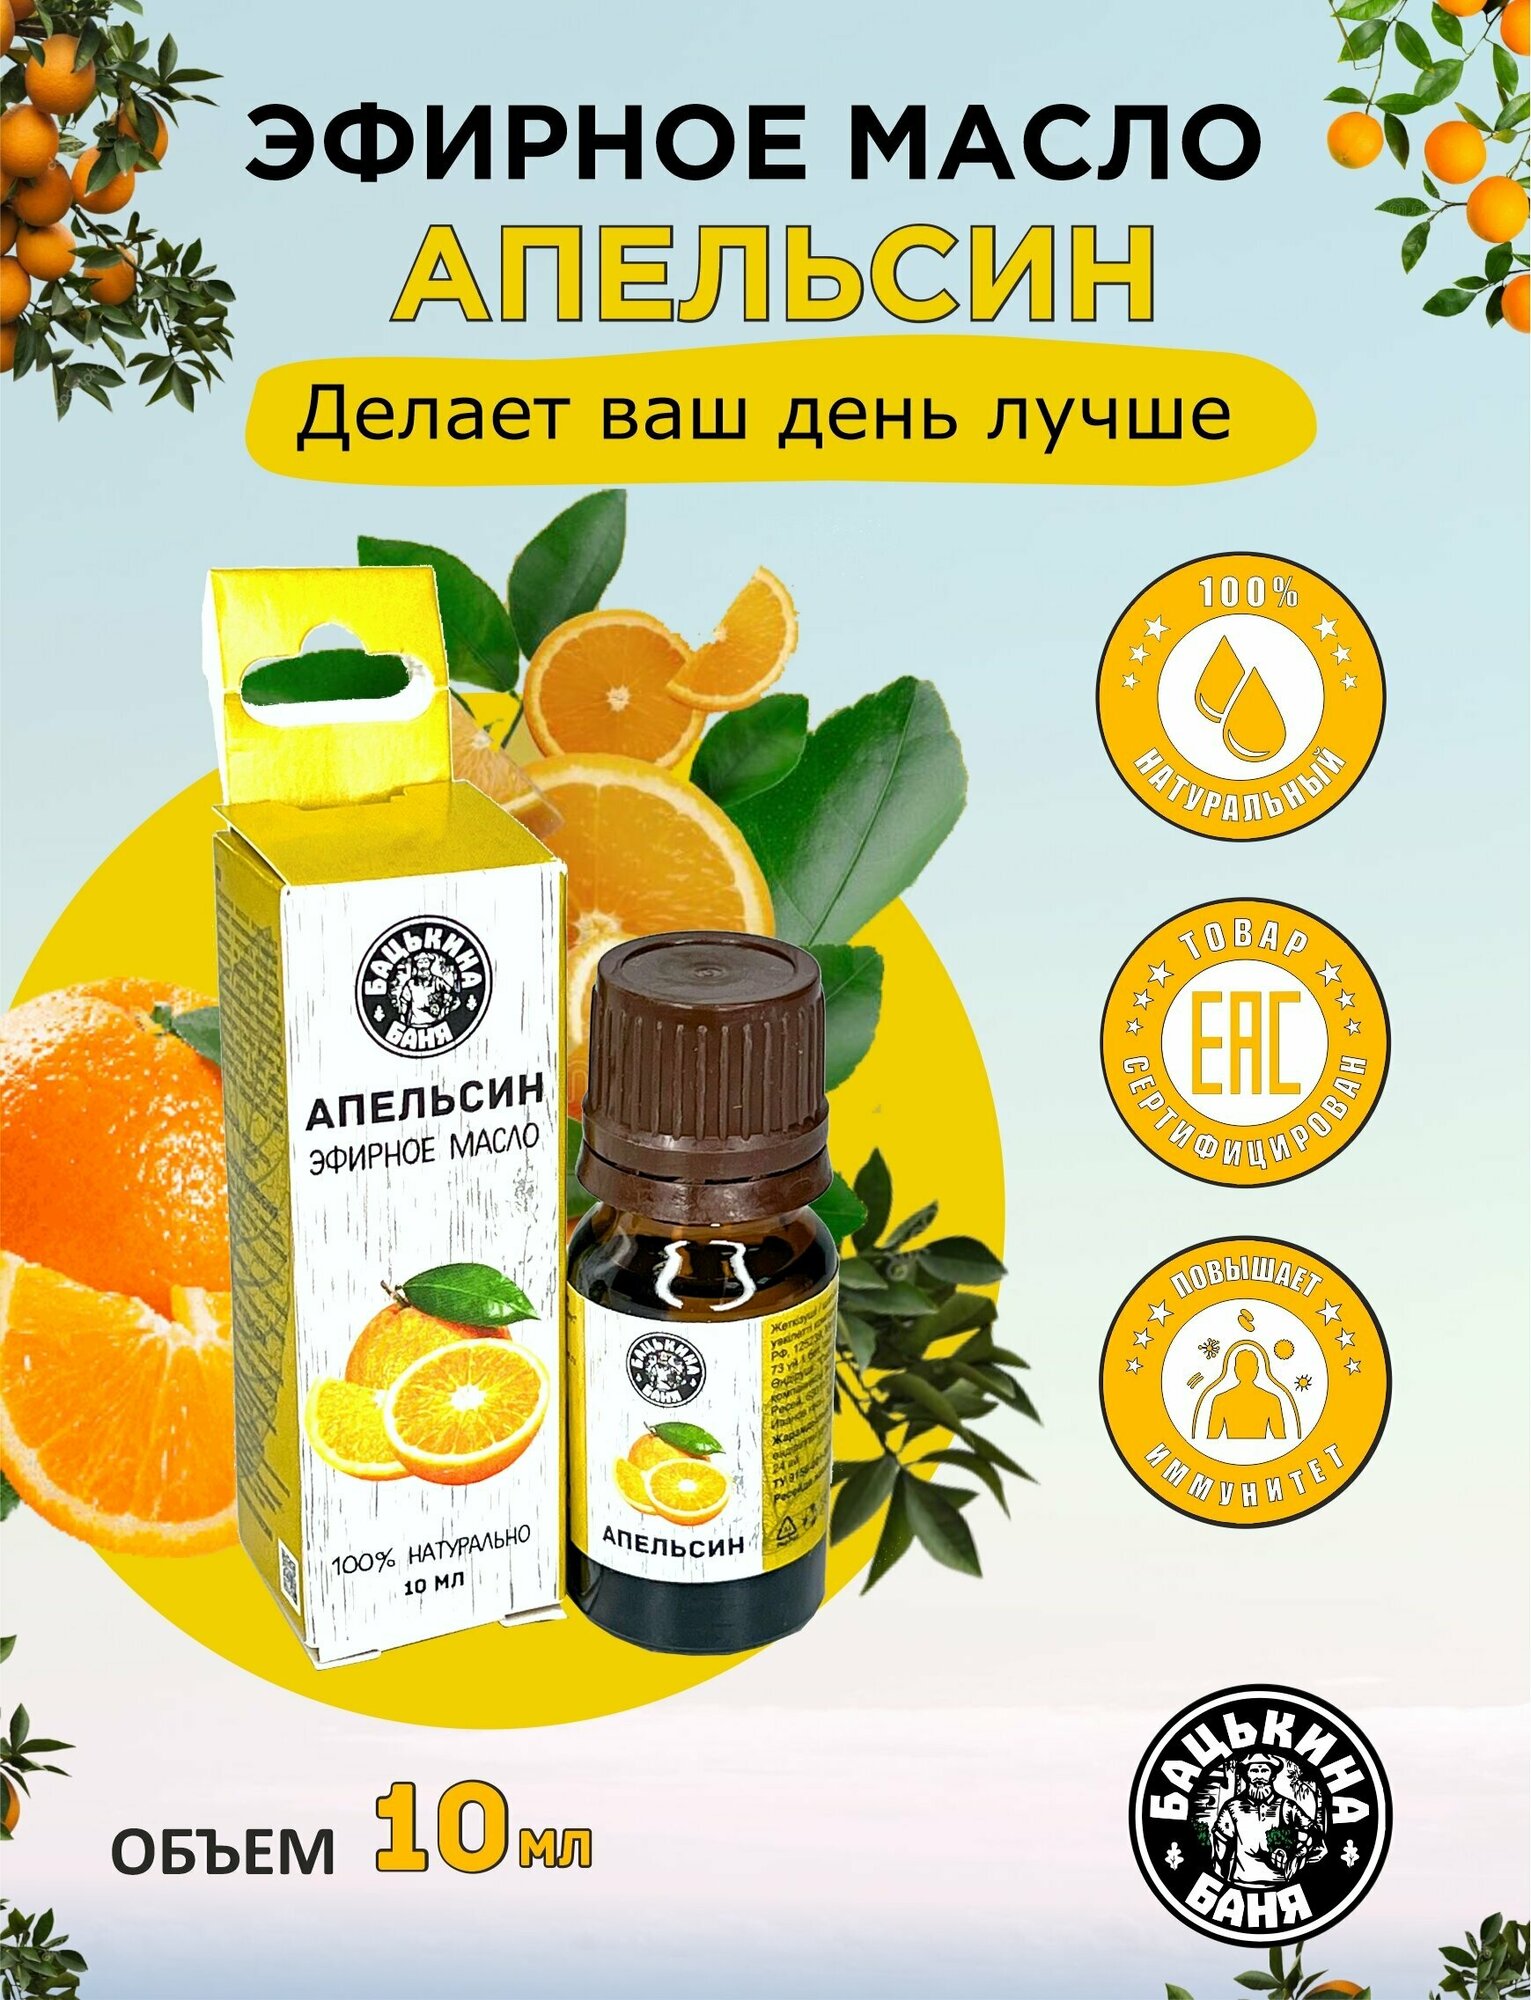 Эфирное масло Апельсин. Эфирные масла натуральные для бани и сауны, увлажнителя воздуха, аромалампы. Ароматизатор для дома, аромамасло